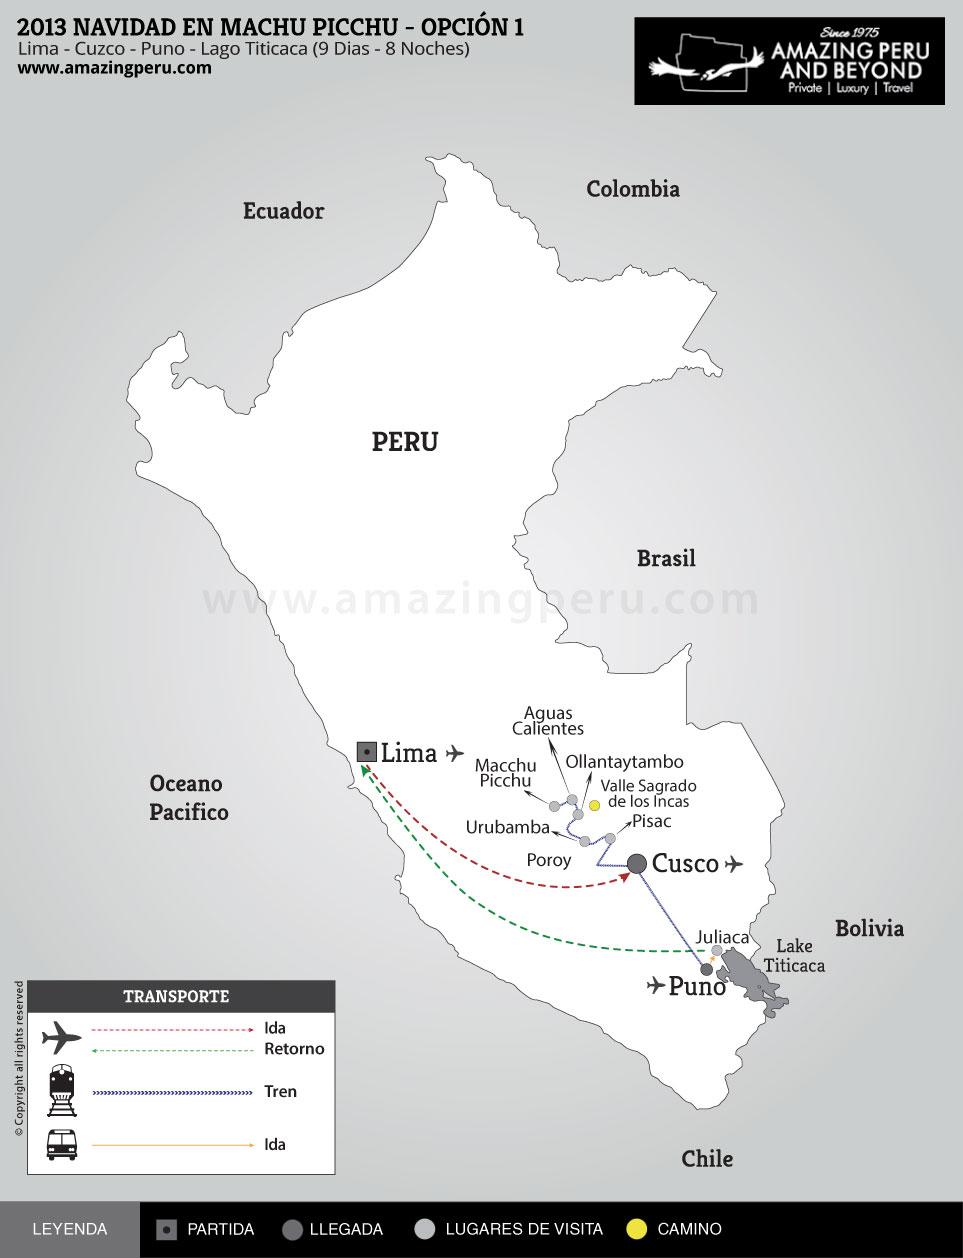 2022 Navidad en Machu Picchu - Opción 1